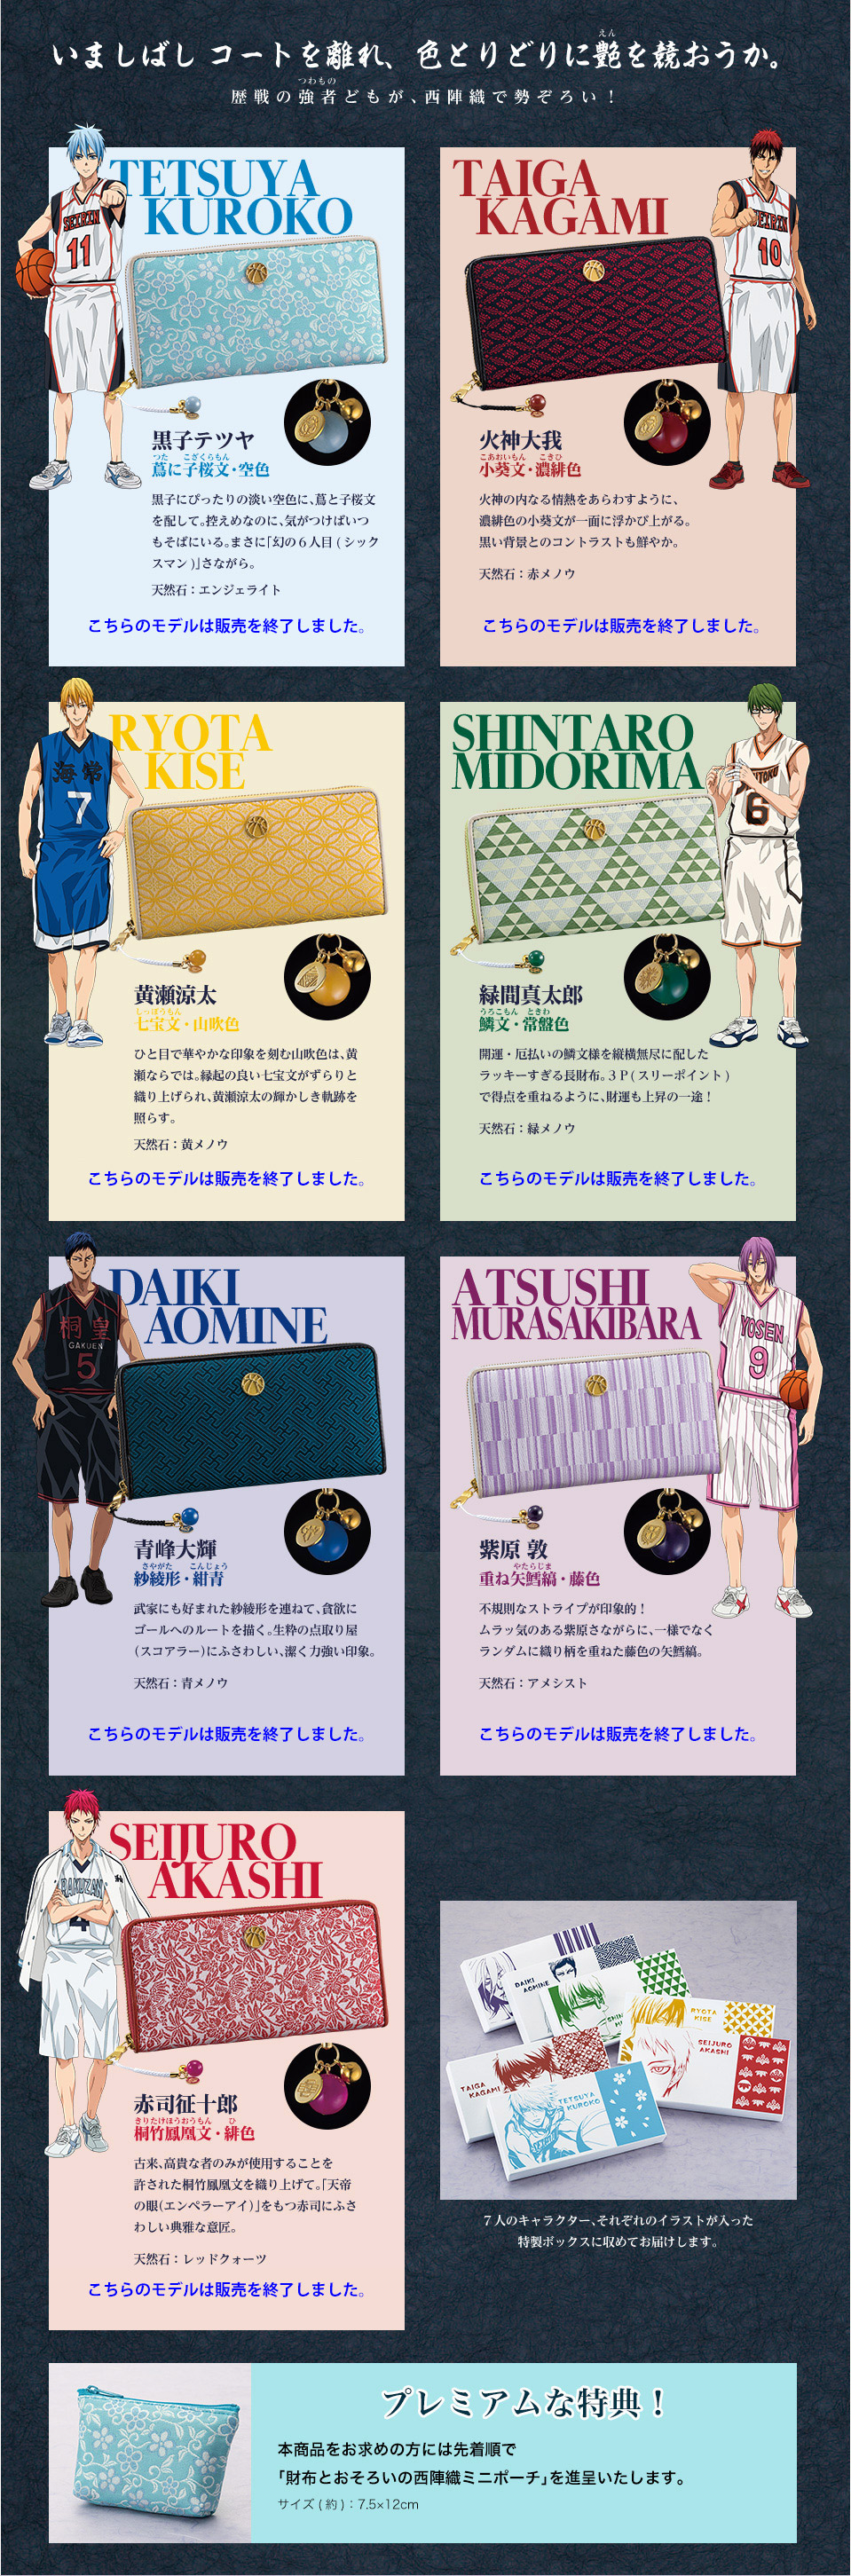 京都 X 黒子のバスケ 西陣織長財布 全七種類プレミアムキャラクターグッズ通販サイト「PREMICO」プレミコ